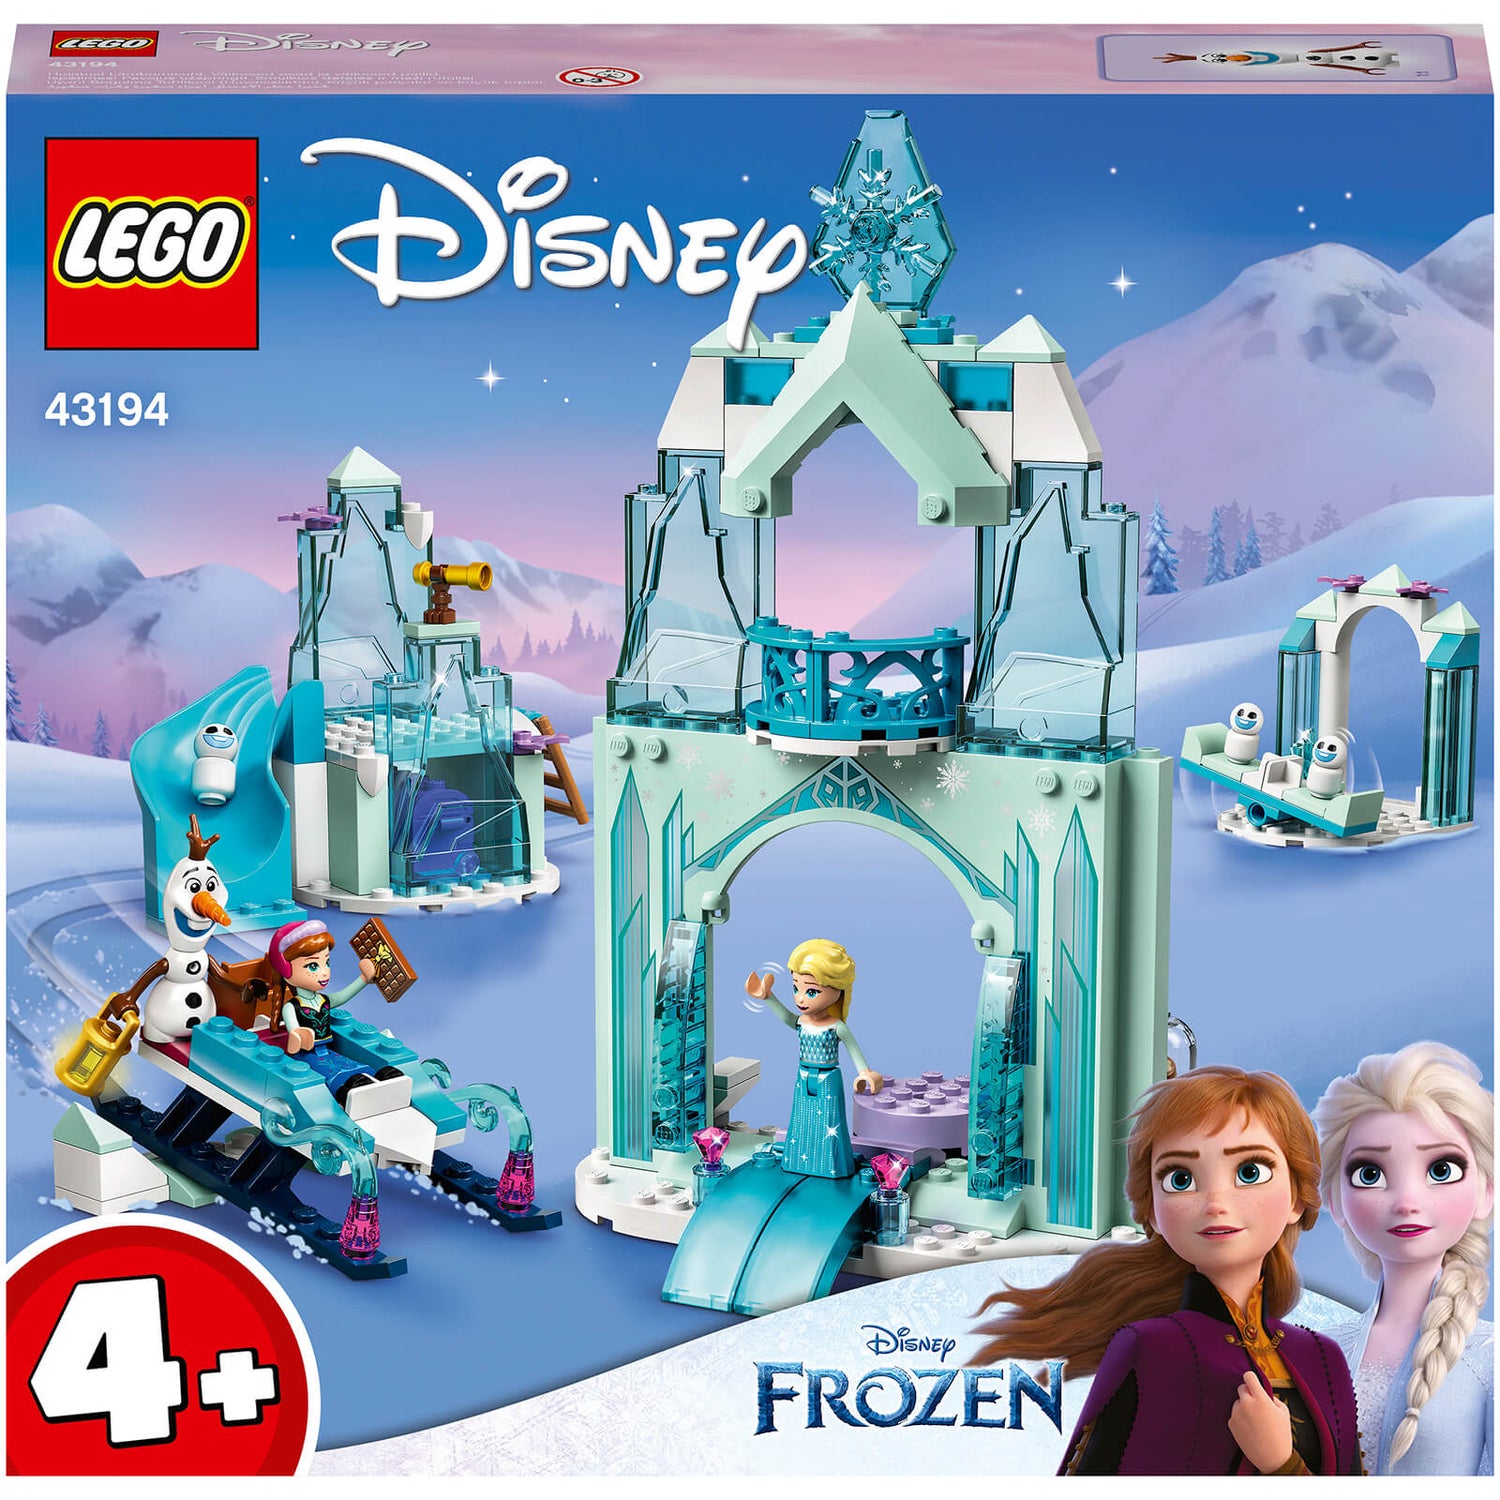 Disney Mini figures by Mattel. : r/Frozen